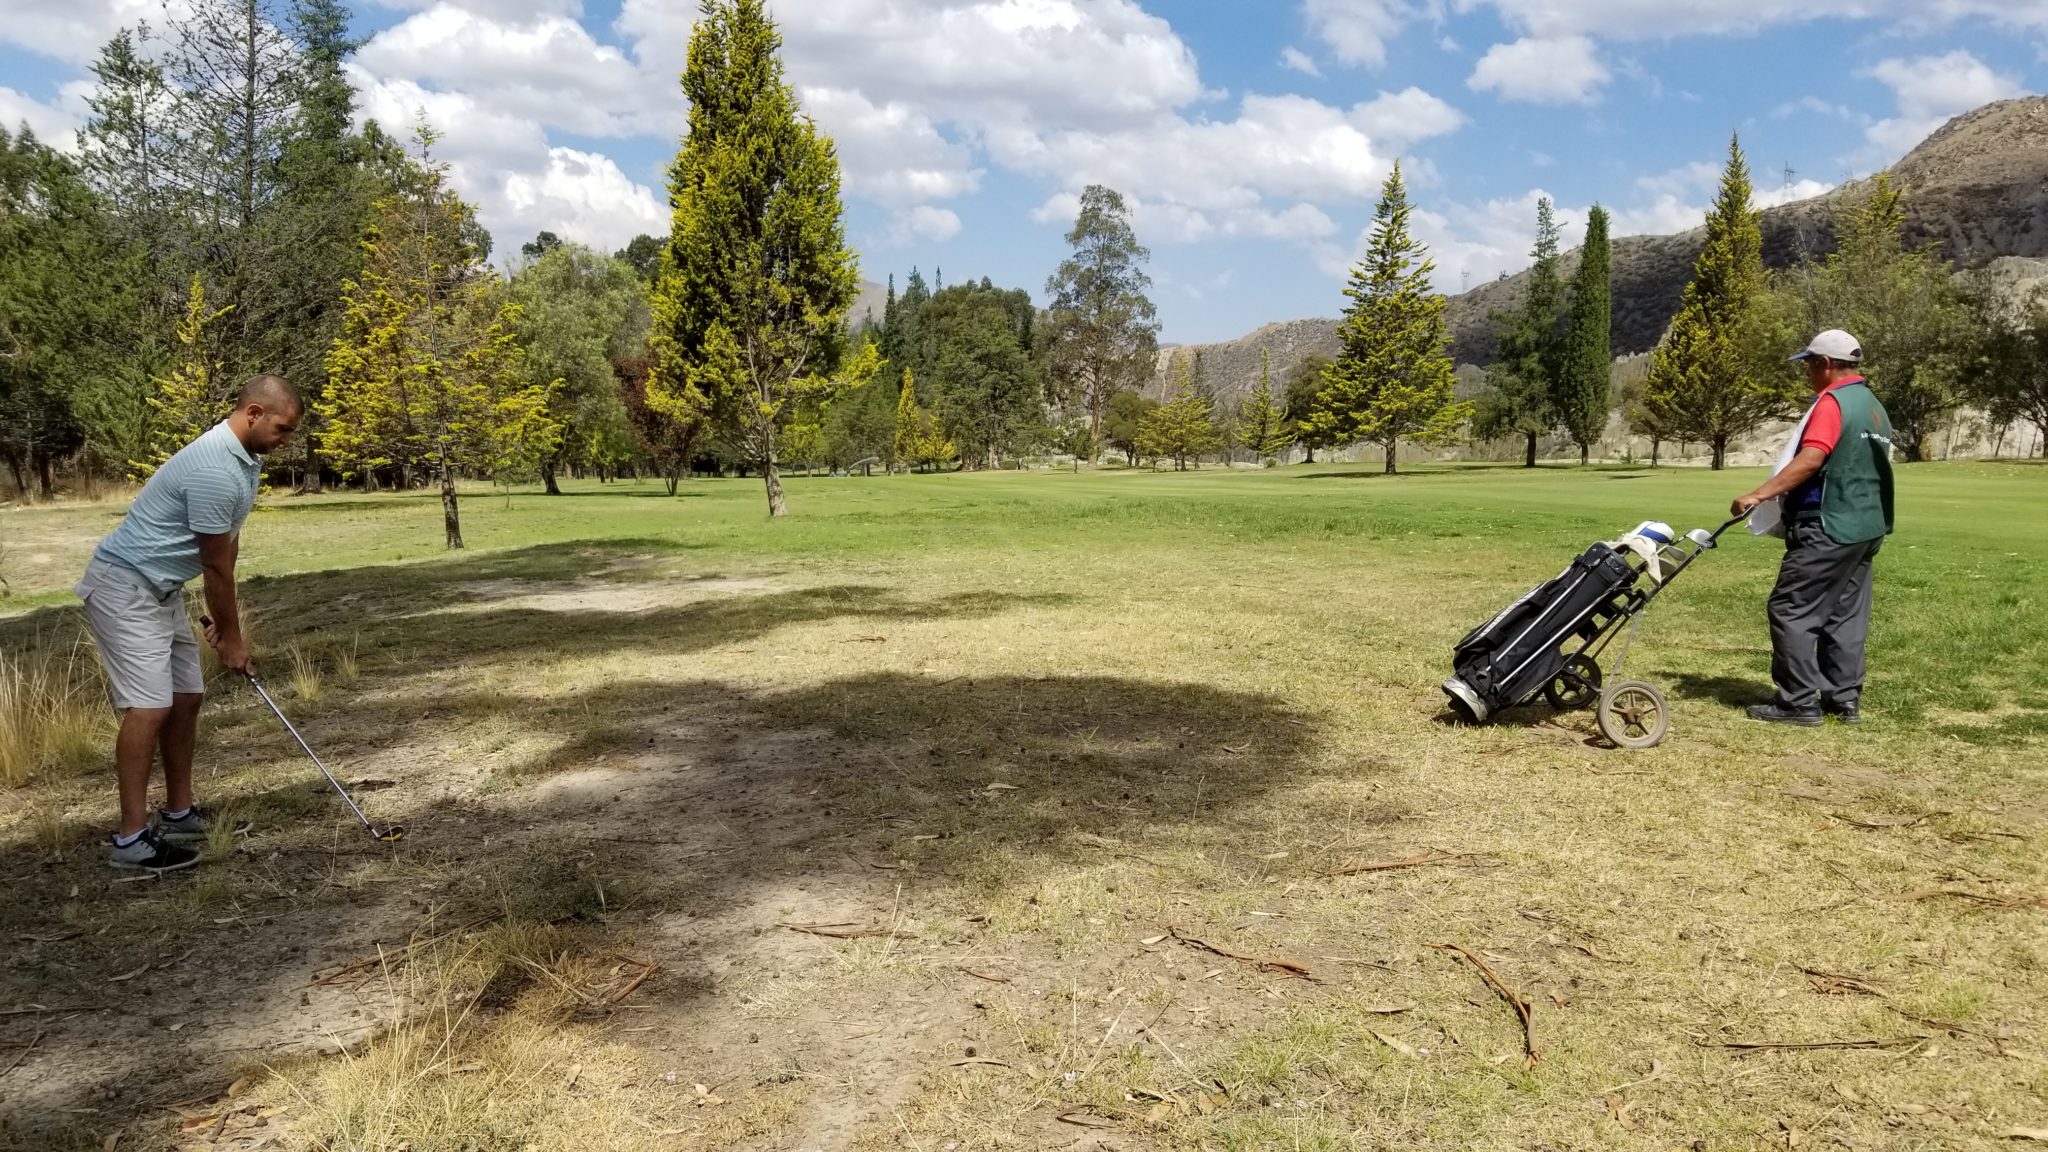 a golf cart in a grassy field